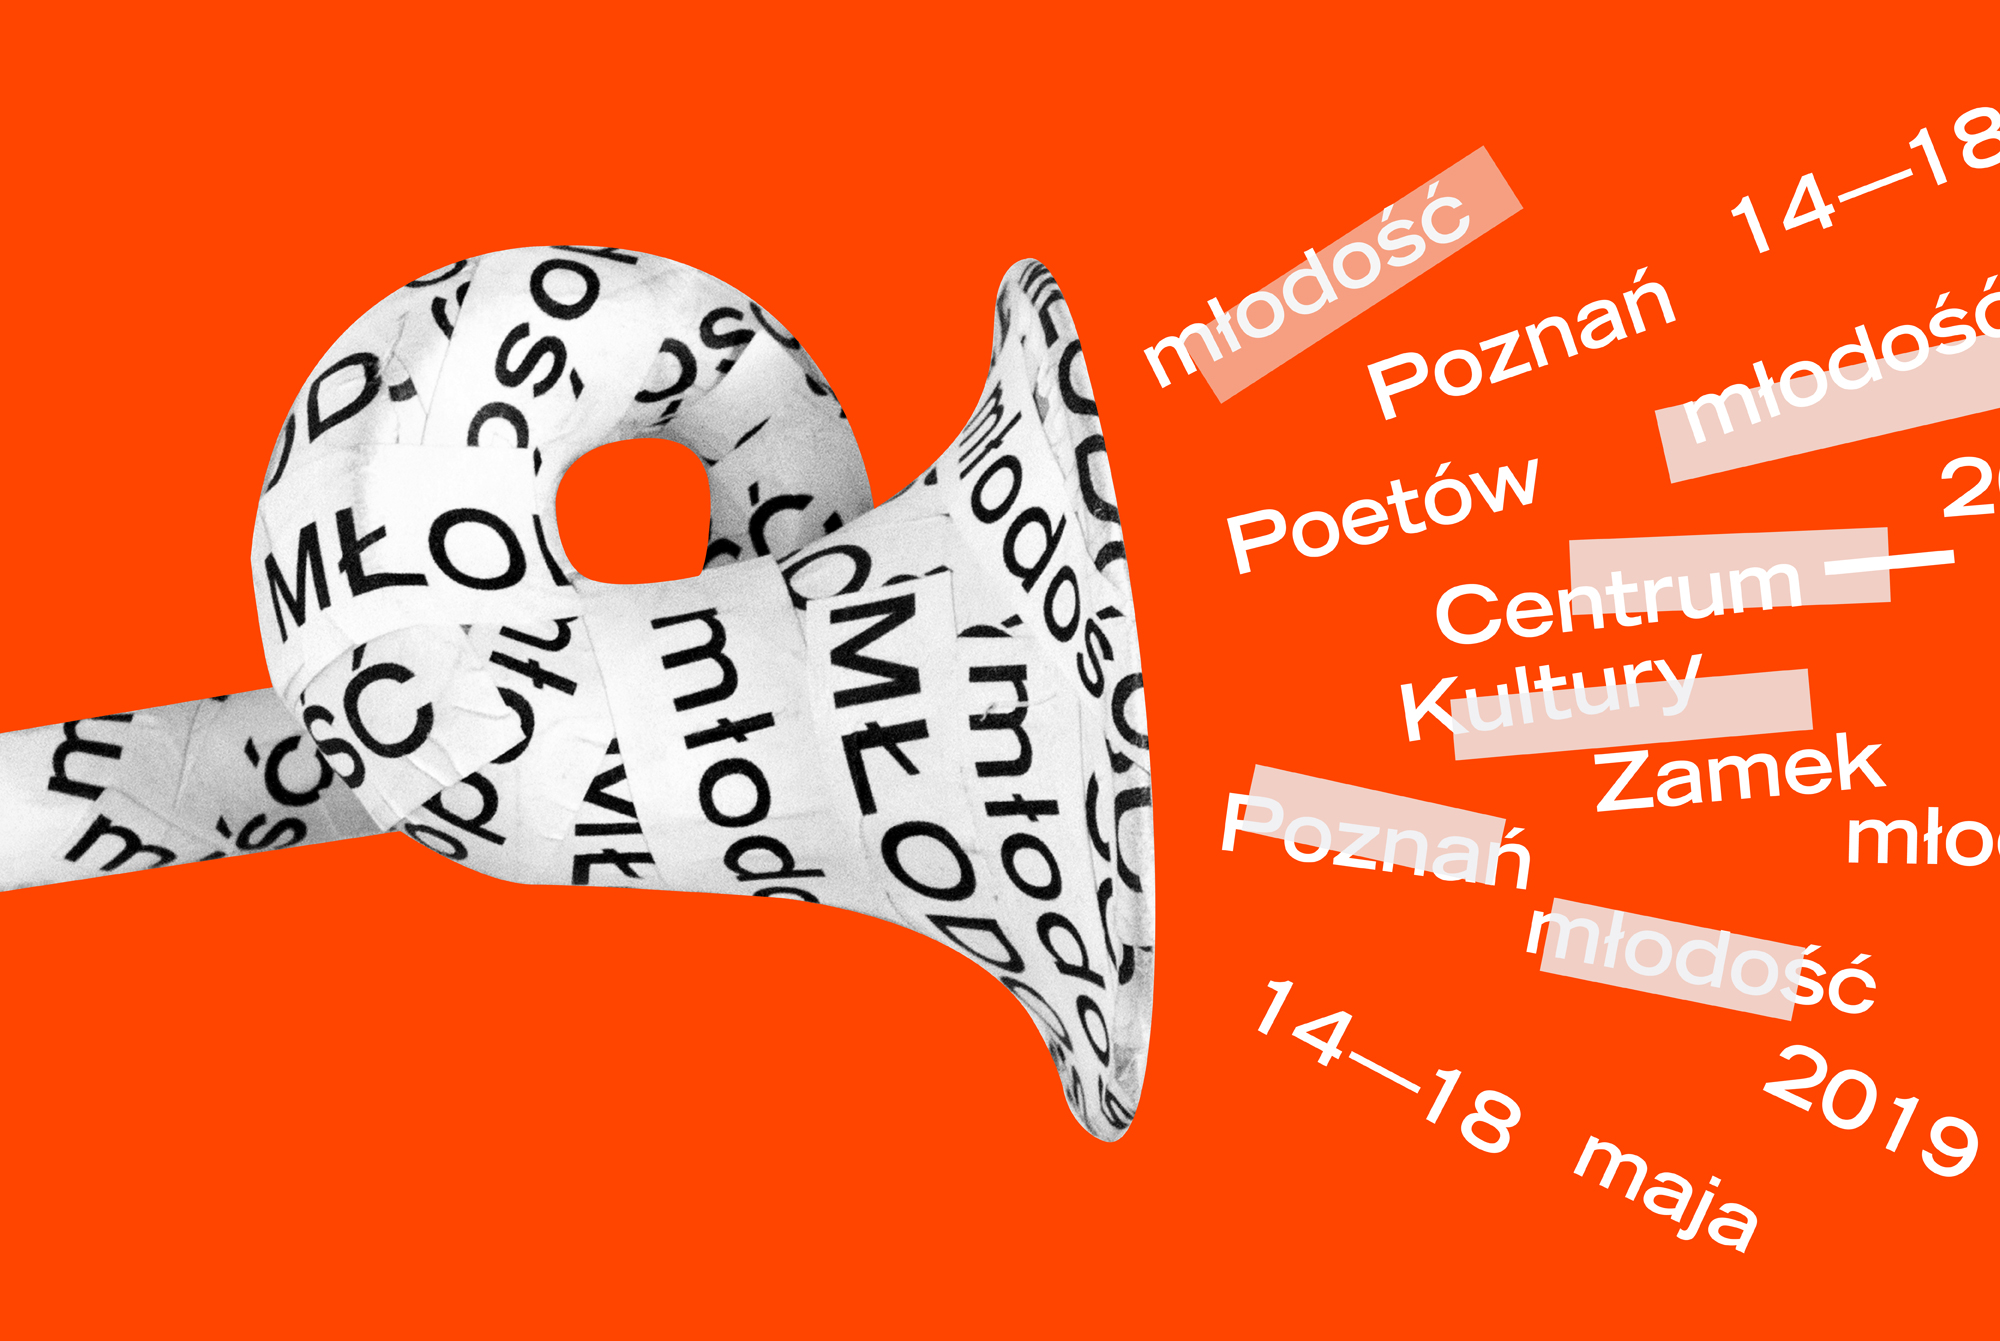 Poznań Poetów 2019